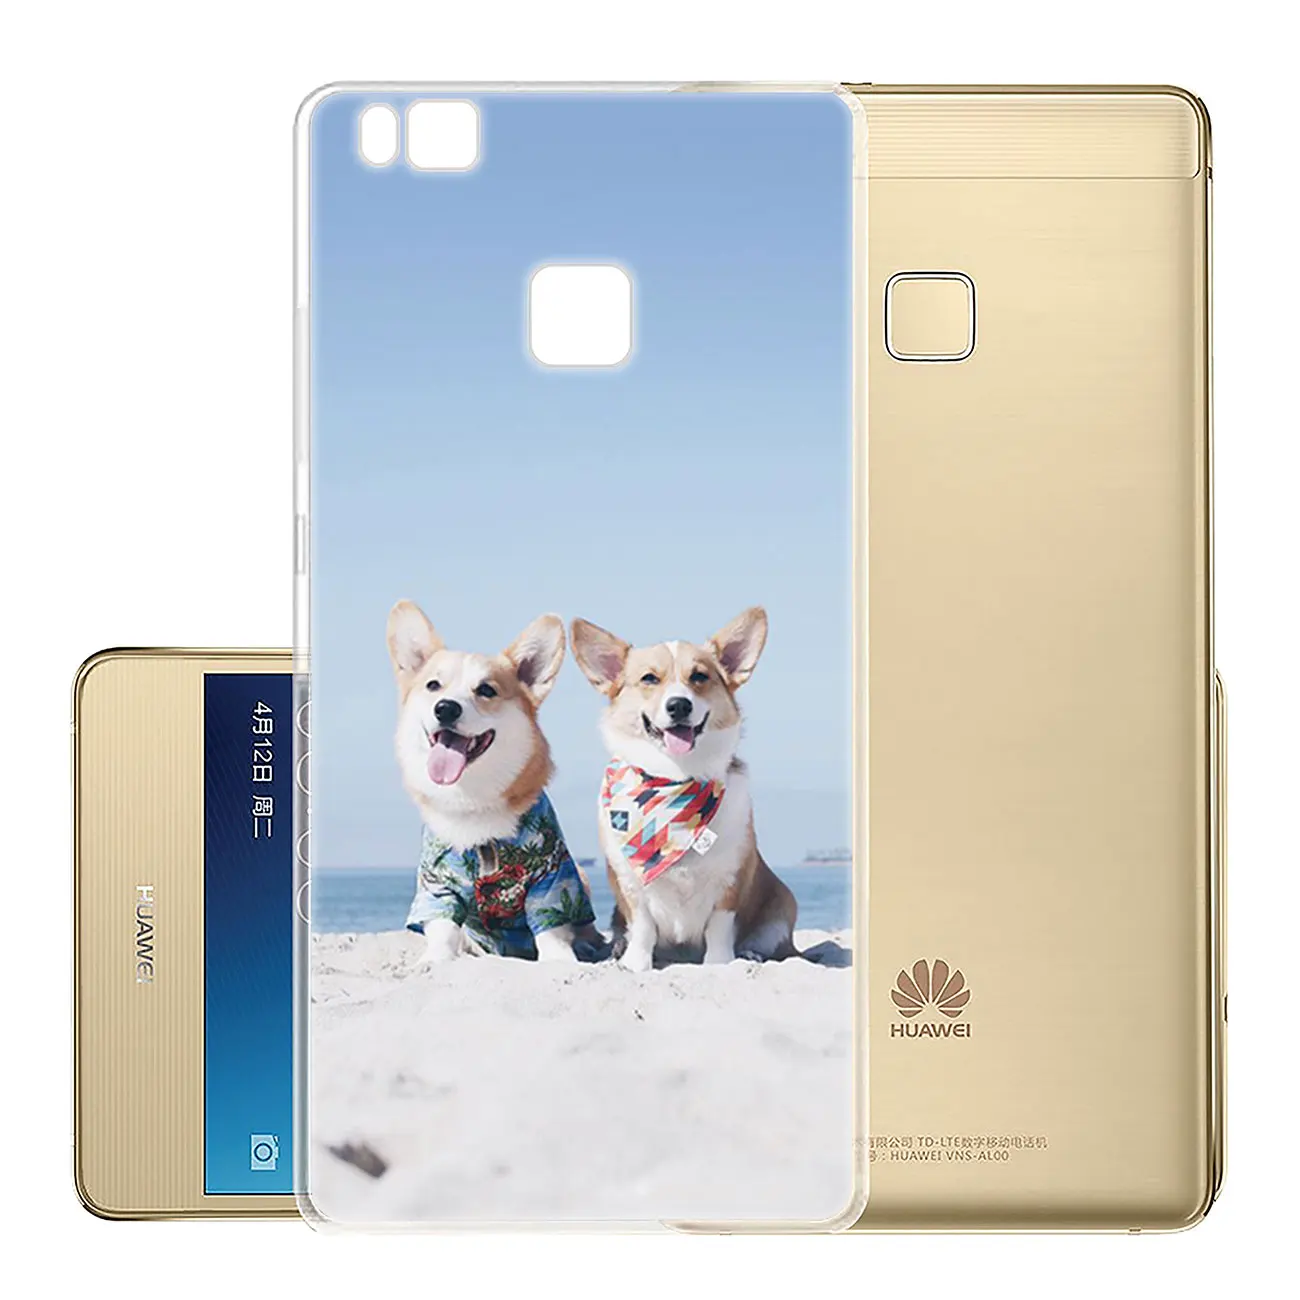 Чехол для телефона Lavaza Corgi dog Для Huawei P30 P20 Pro P9 P10 Plus P8 Lite Mini 2016 2017 P smart Z 2019 чехол |